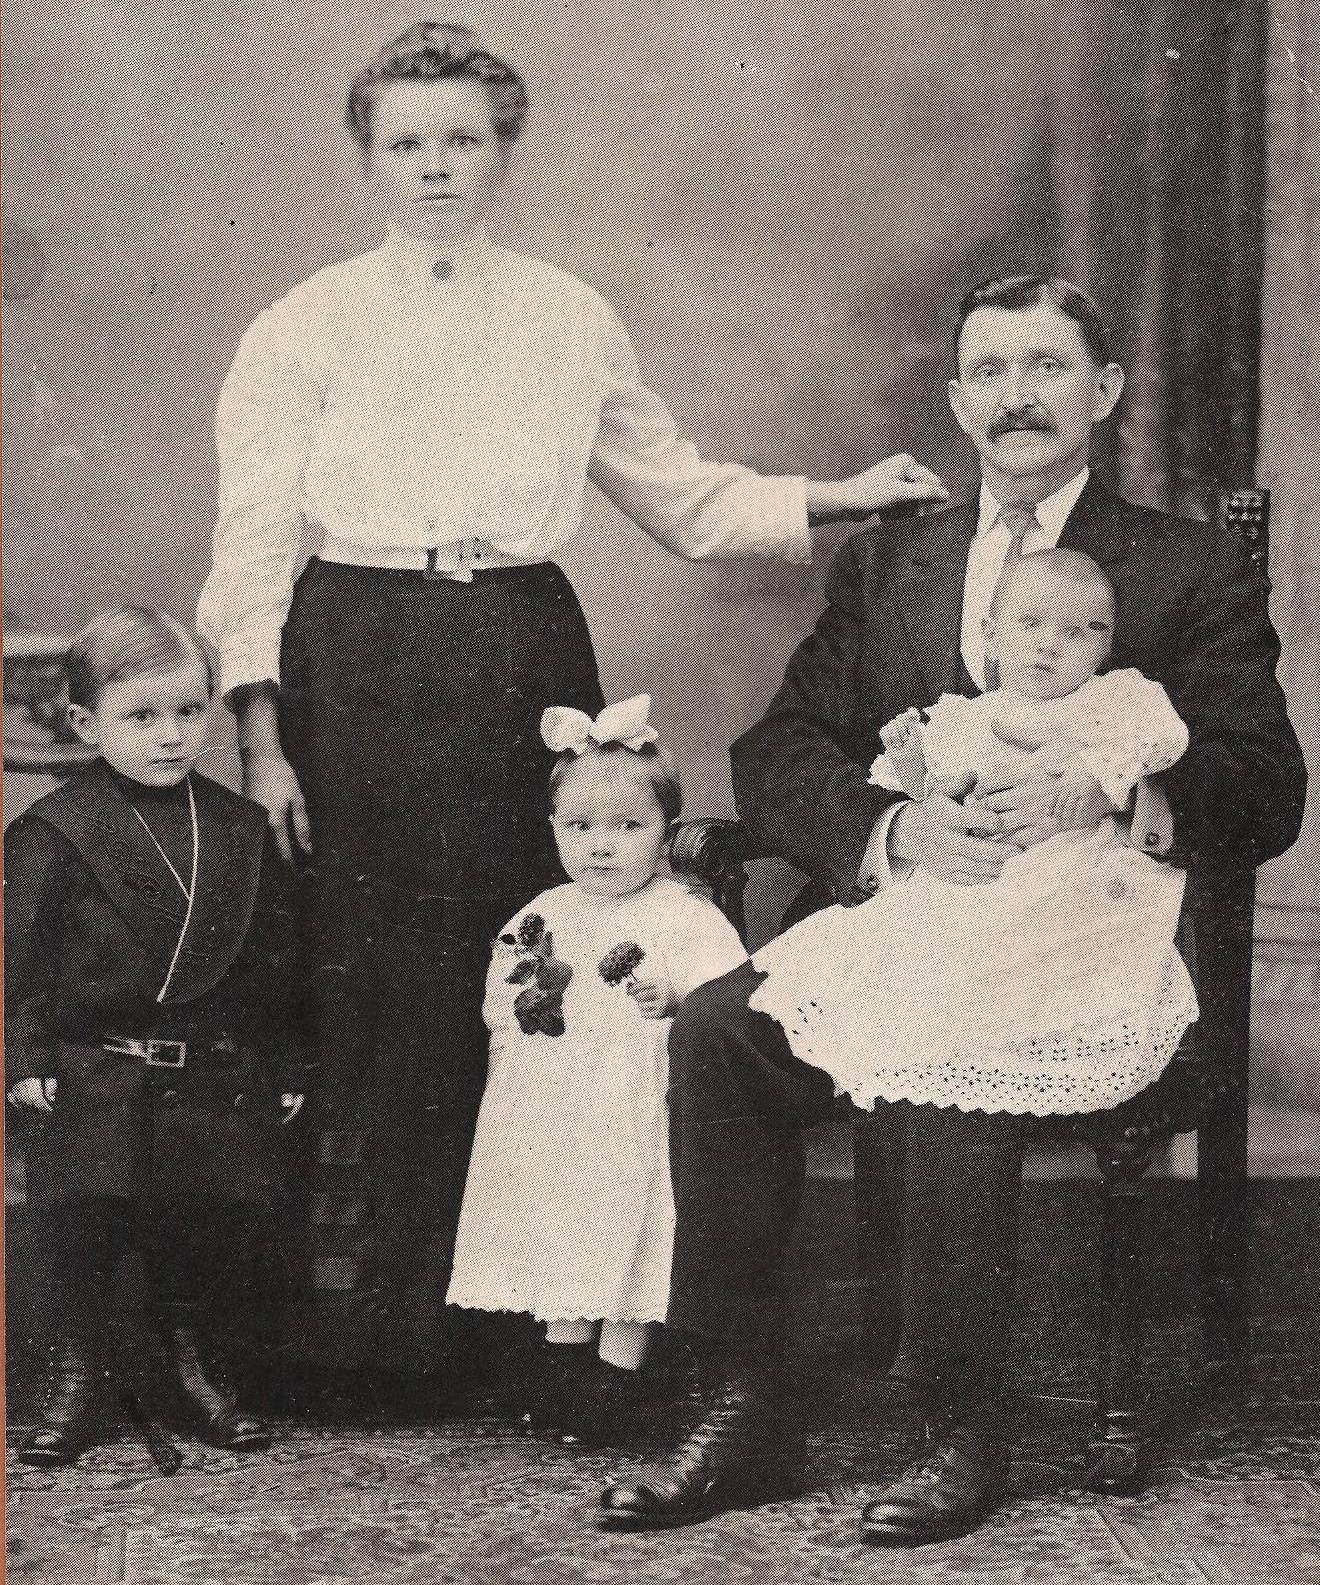 The Rynkiewicz family, Pennsylvania c1911